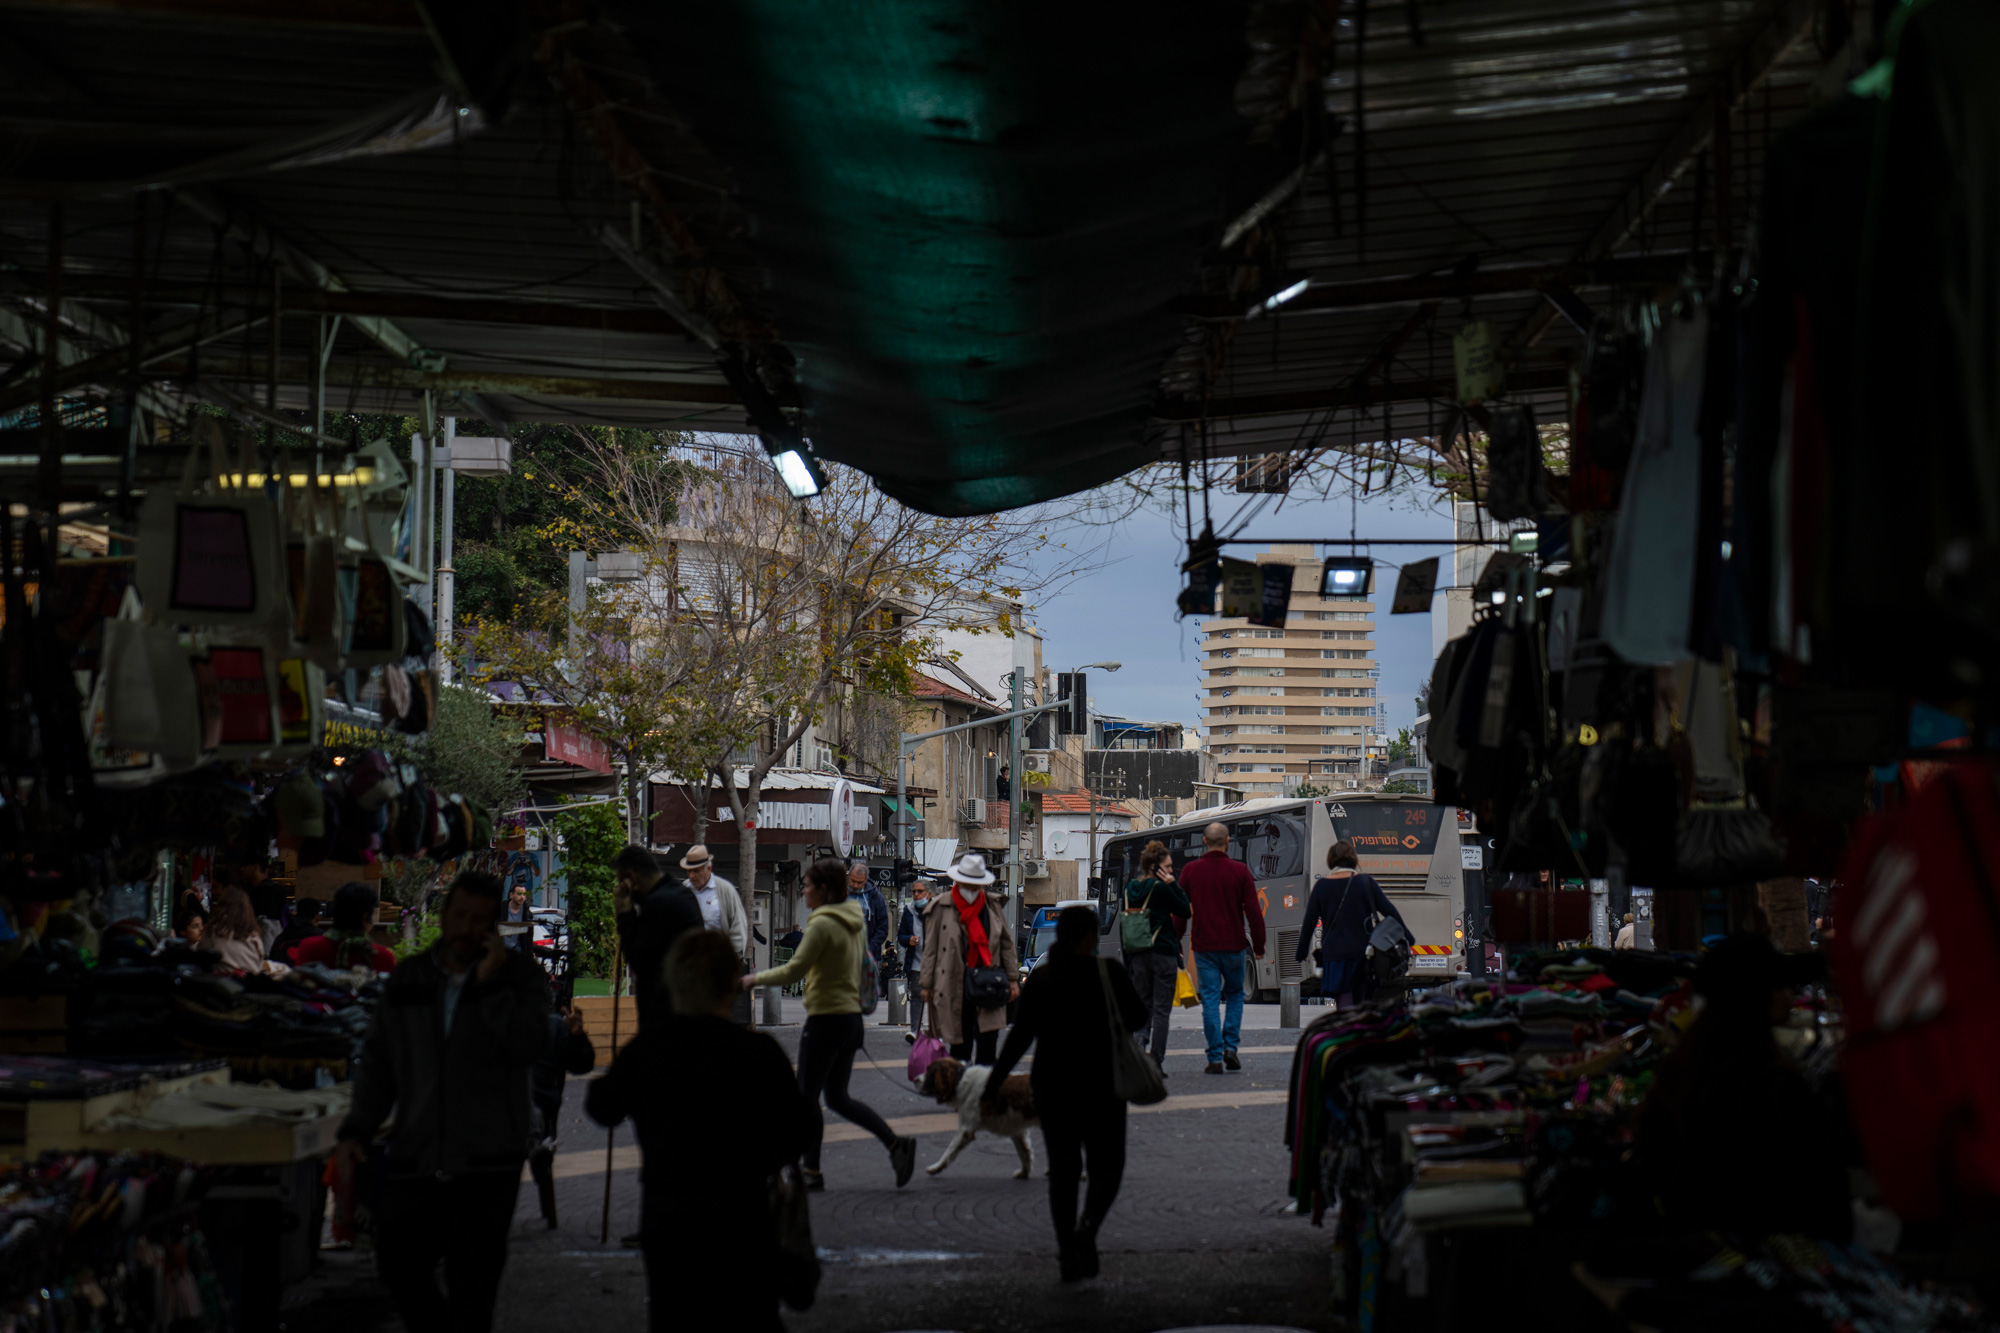 People shop in a market in Tel Aviv, Israel, on January 4.